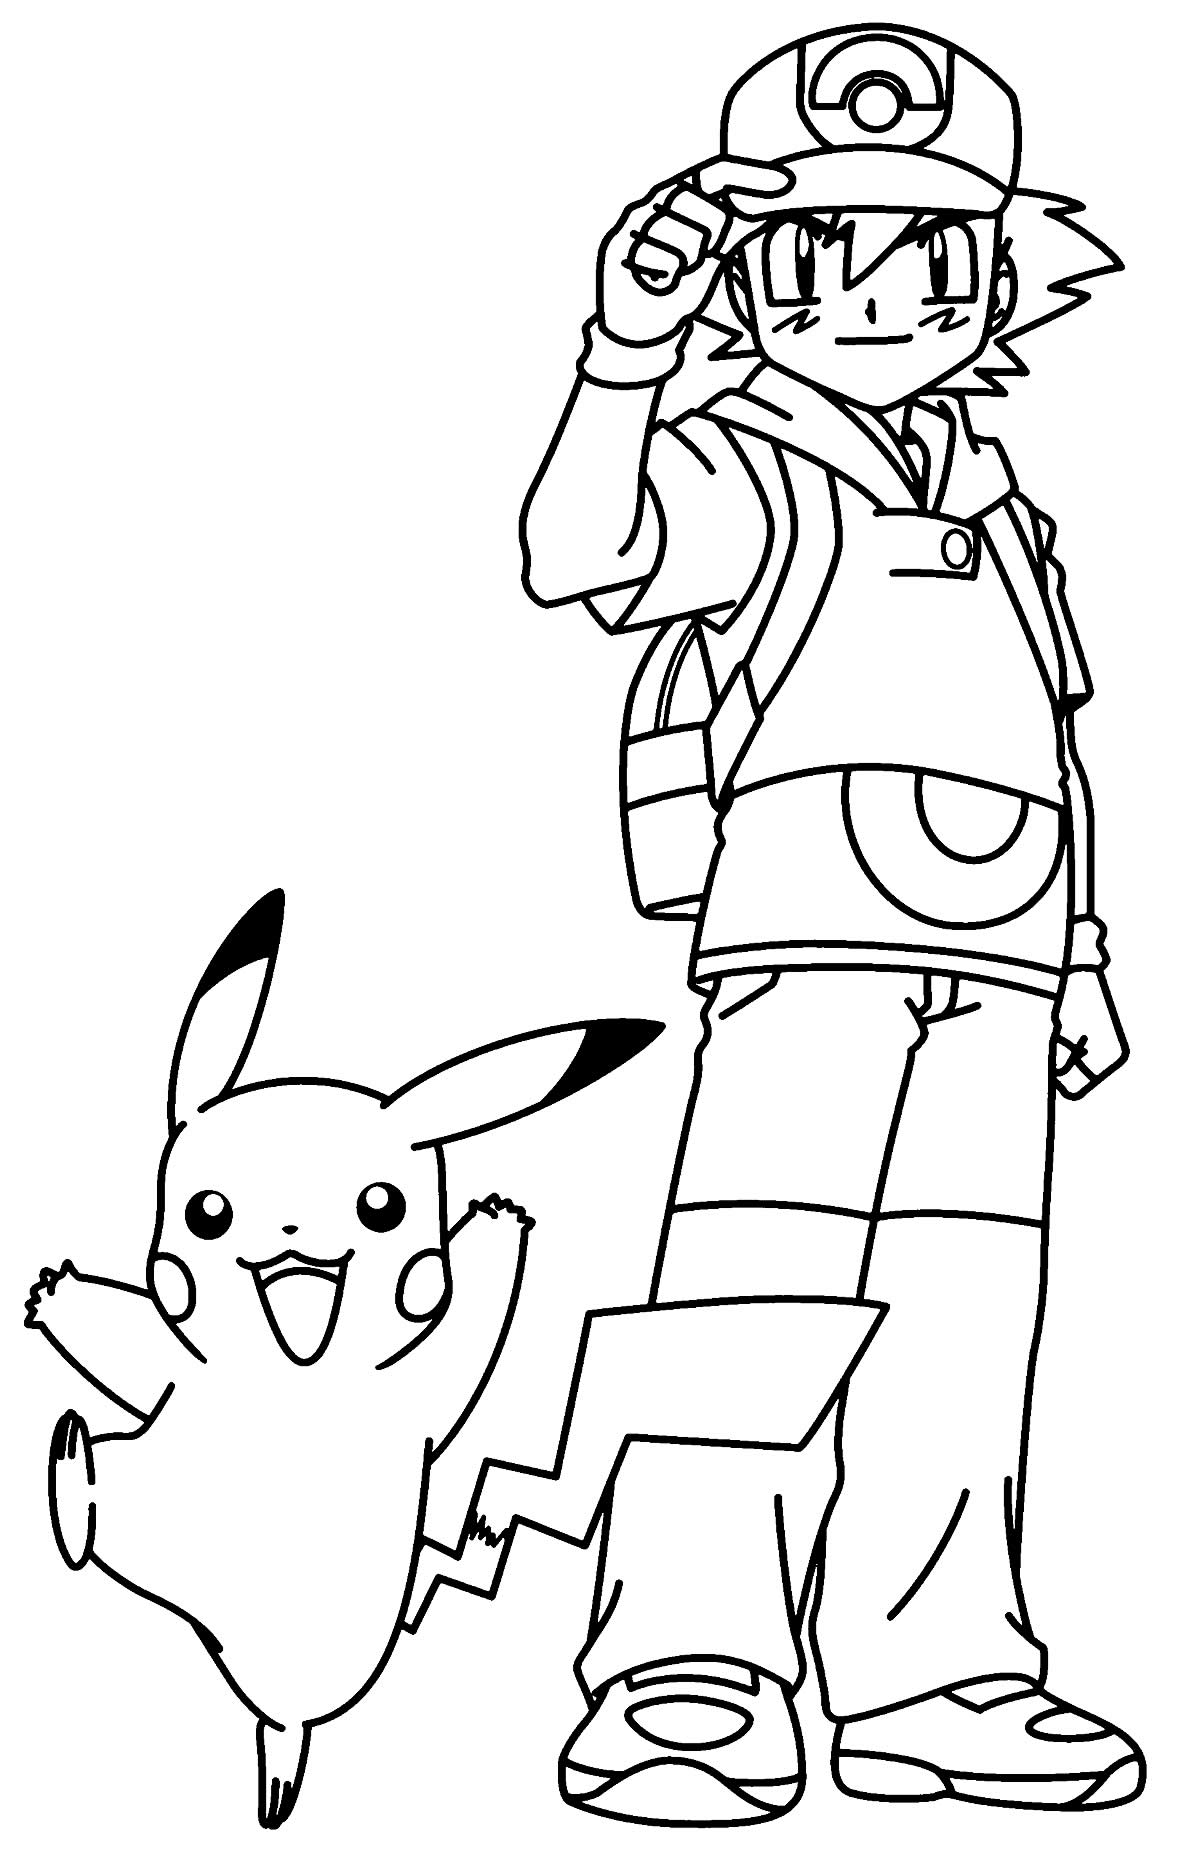 Desenho para colorir de Pikachu e Ash